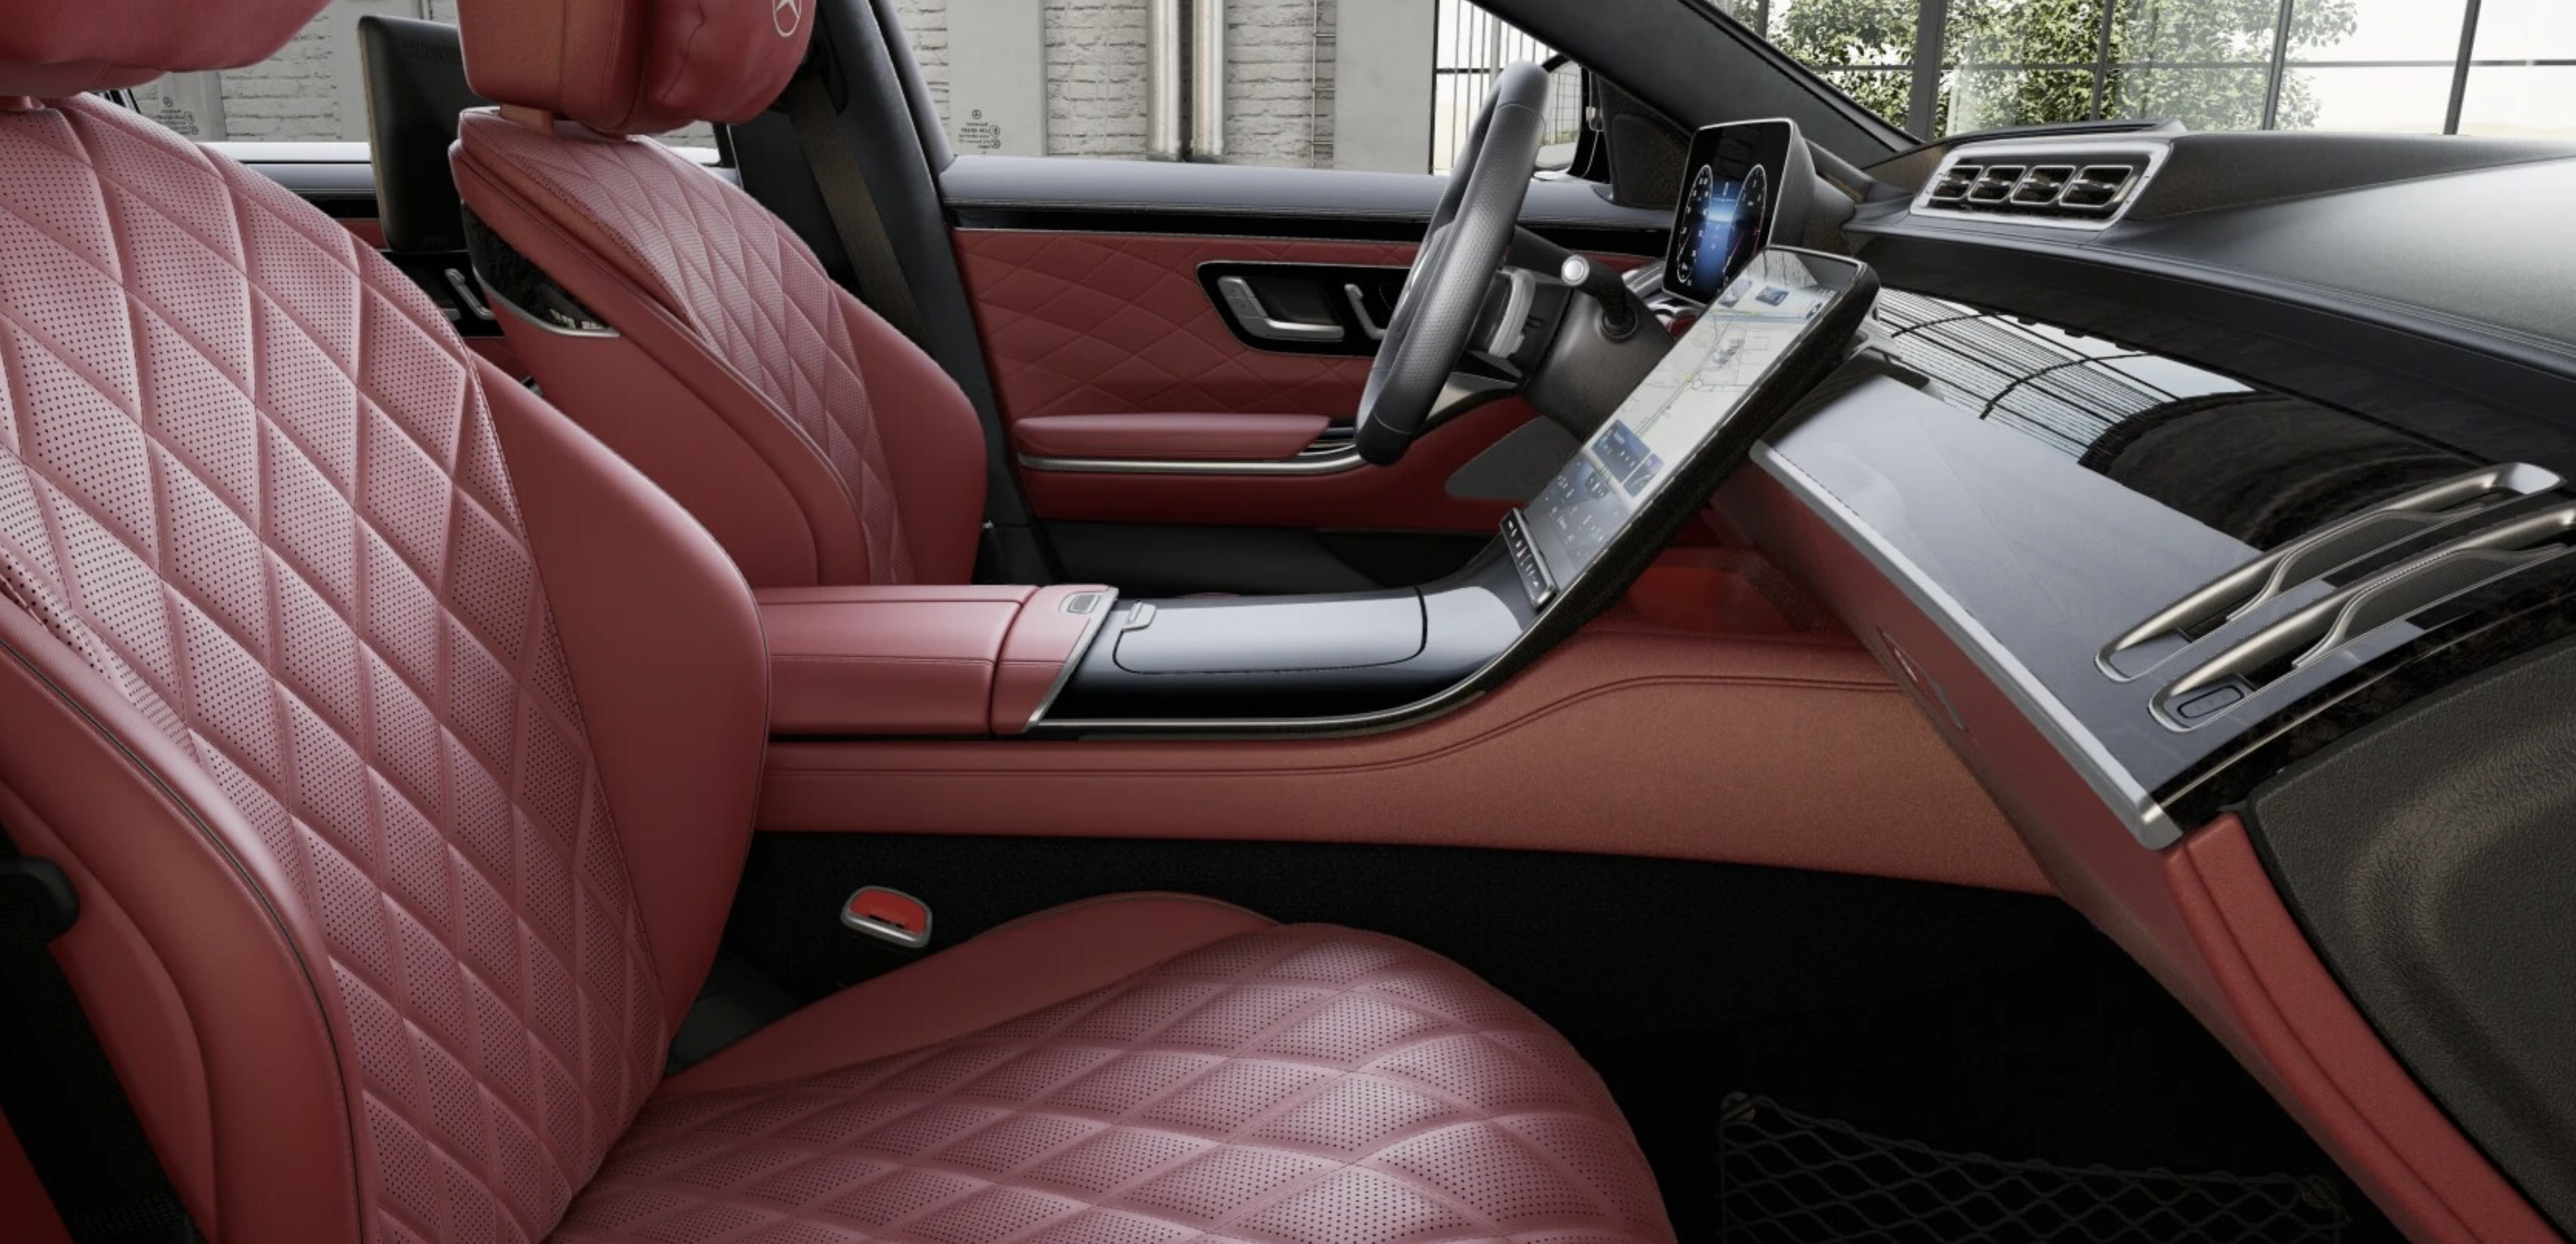 Mercedes S 400d 4matic AMG LONG | nové auto skladem | bílá s červenou kůží | luxusní edice MANUFAKTUR | maximální výbava | sleva 14% | výprodej skladu | nákup online | auto eshop AUTOiBUY.com